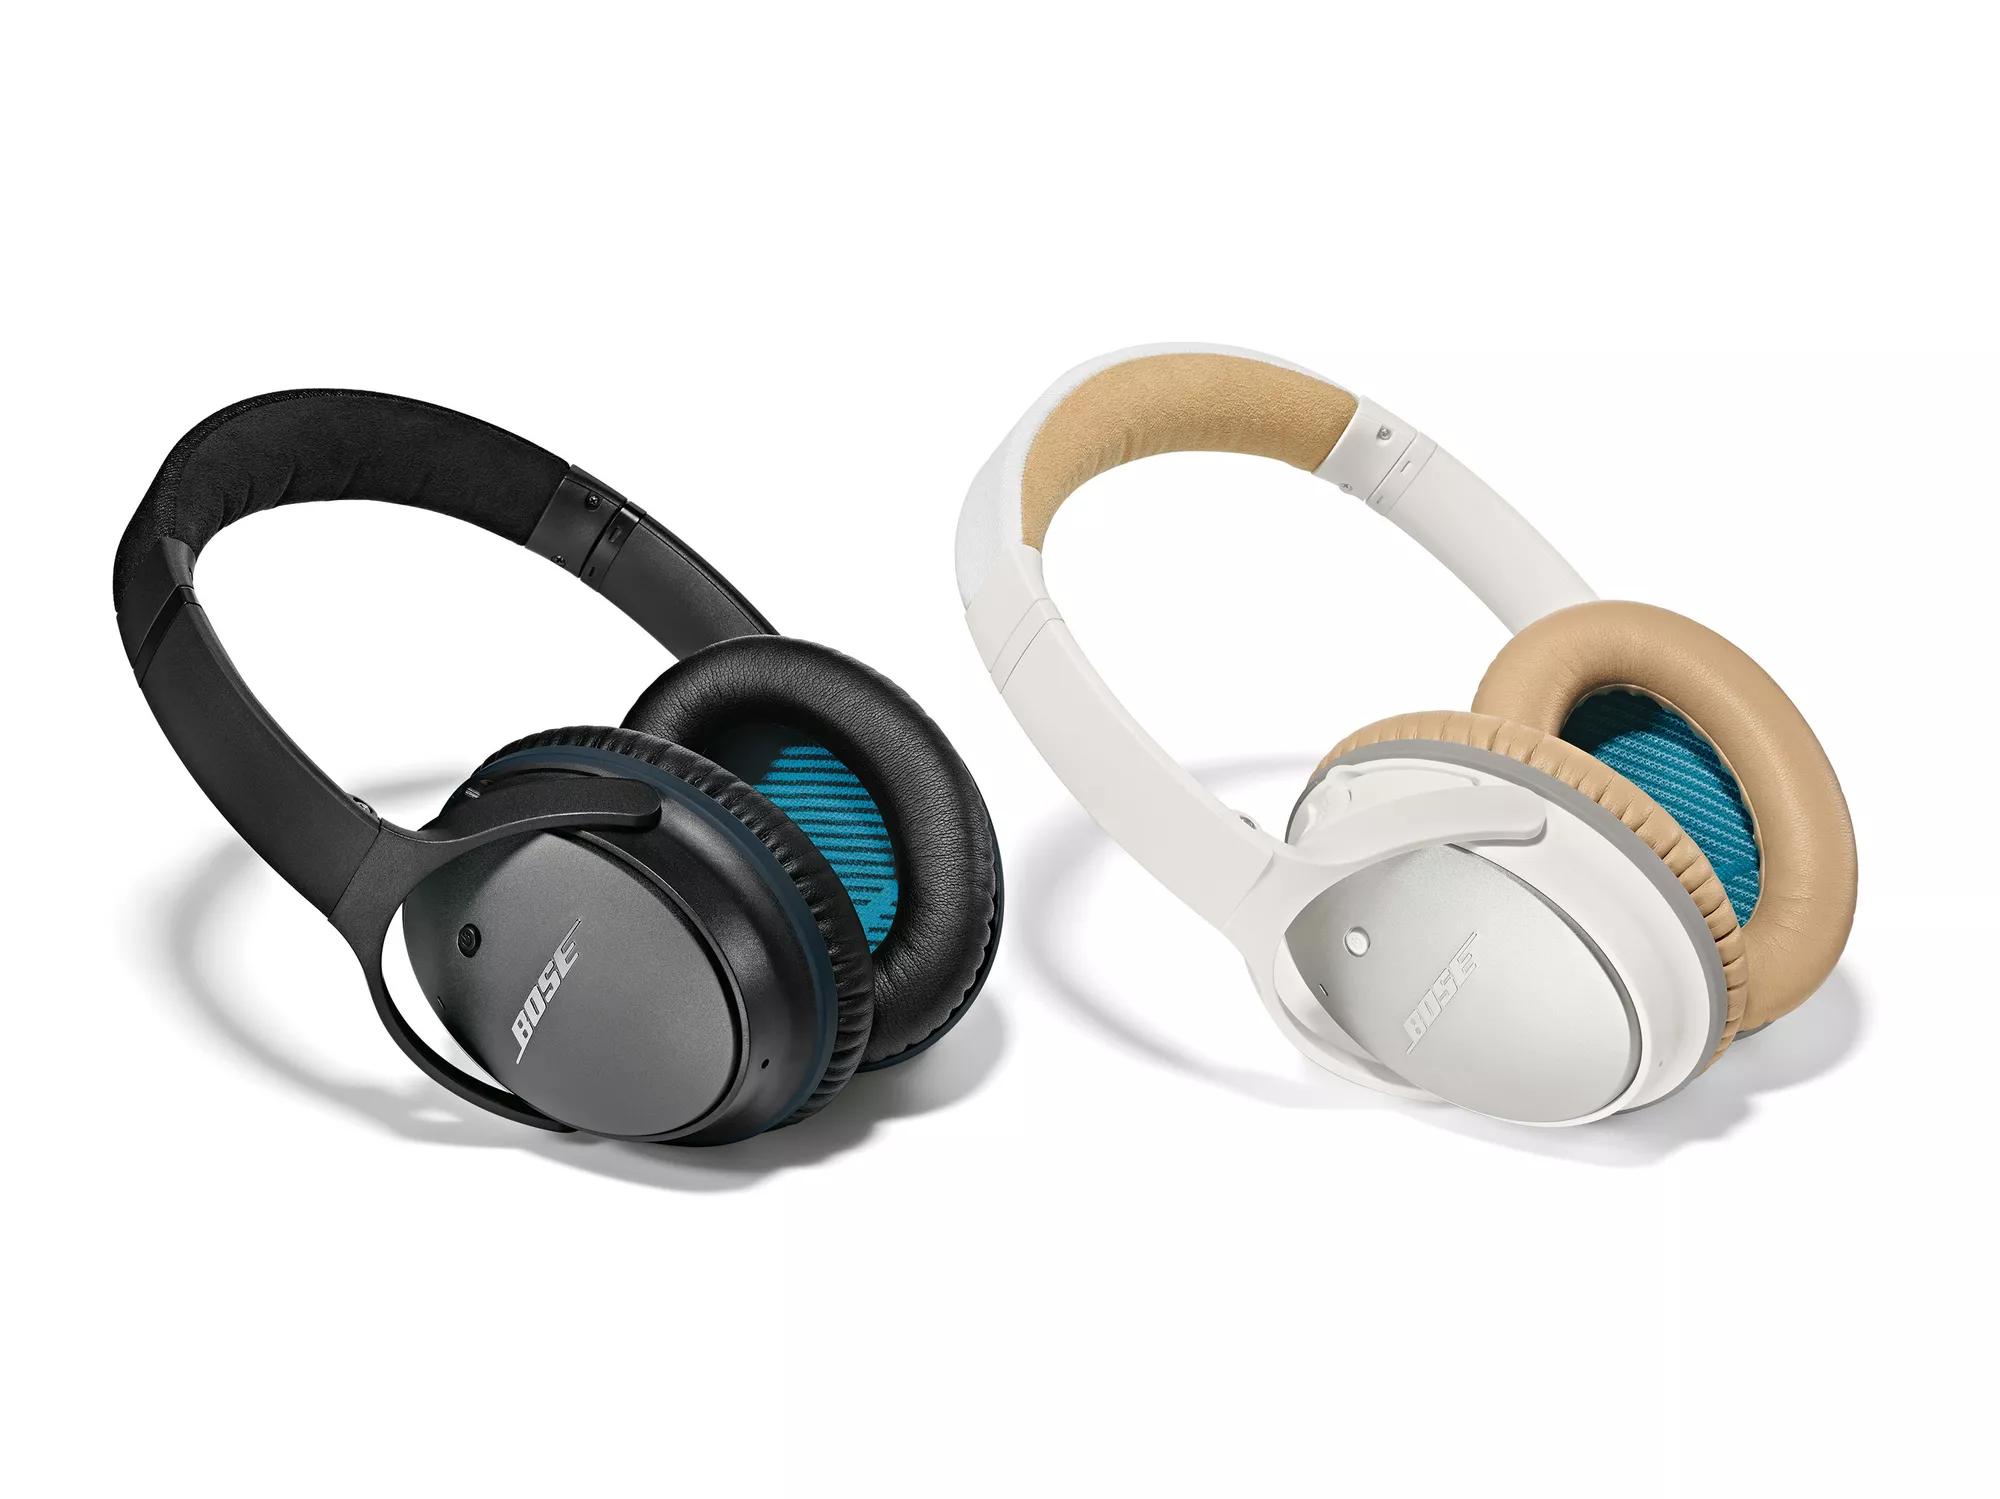 Introducing QuietComfort 25 Acoustic Headphones